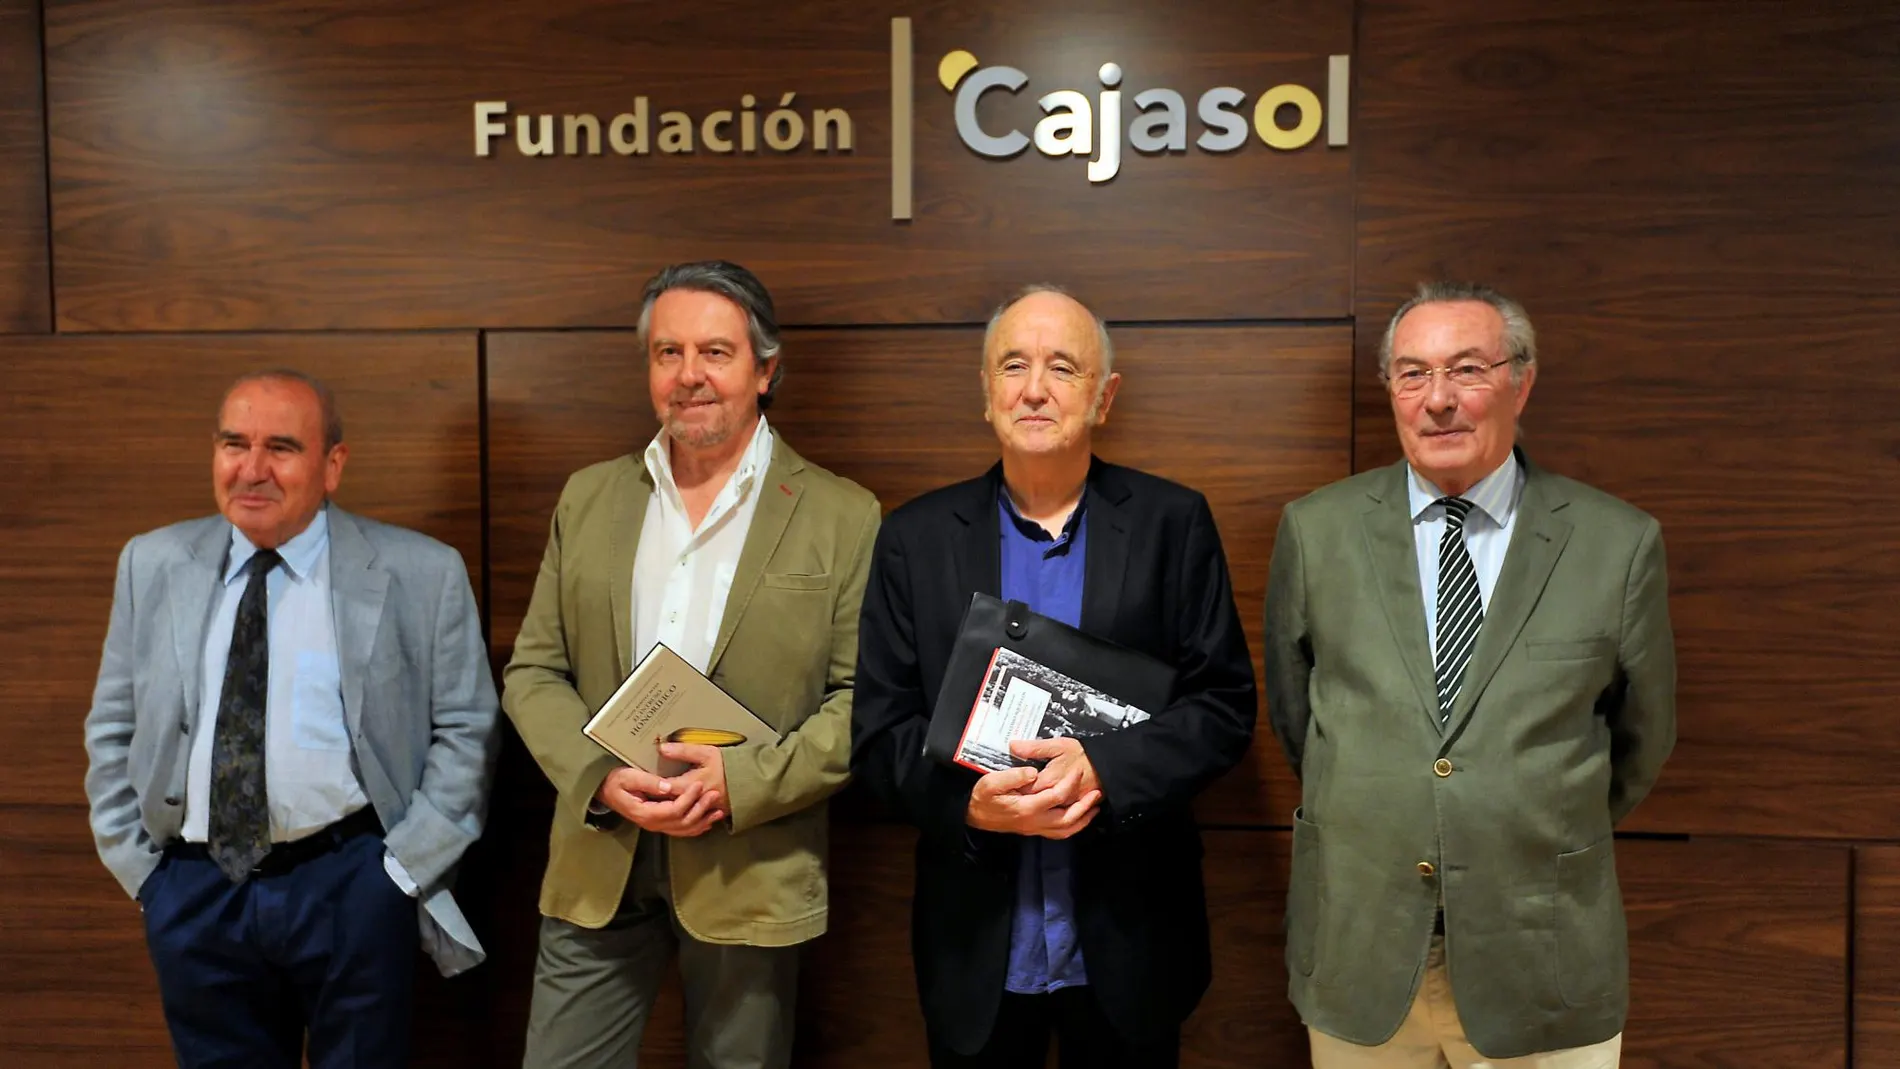 La Fundación Cajasol acogió la presentación de los premios Alvar y Domínguez Ortiz / Foto: Ke-Imagen